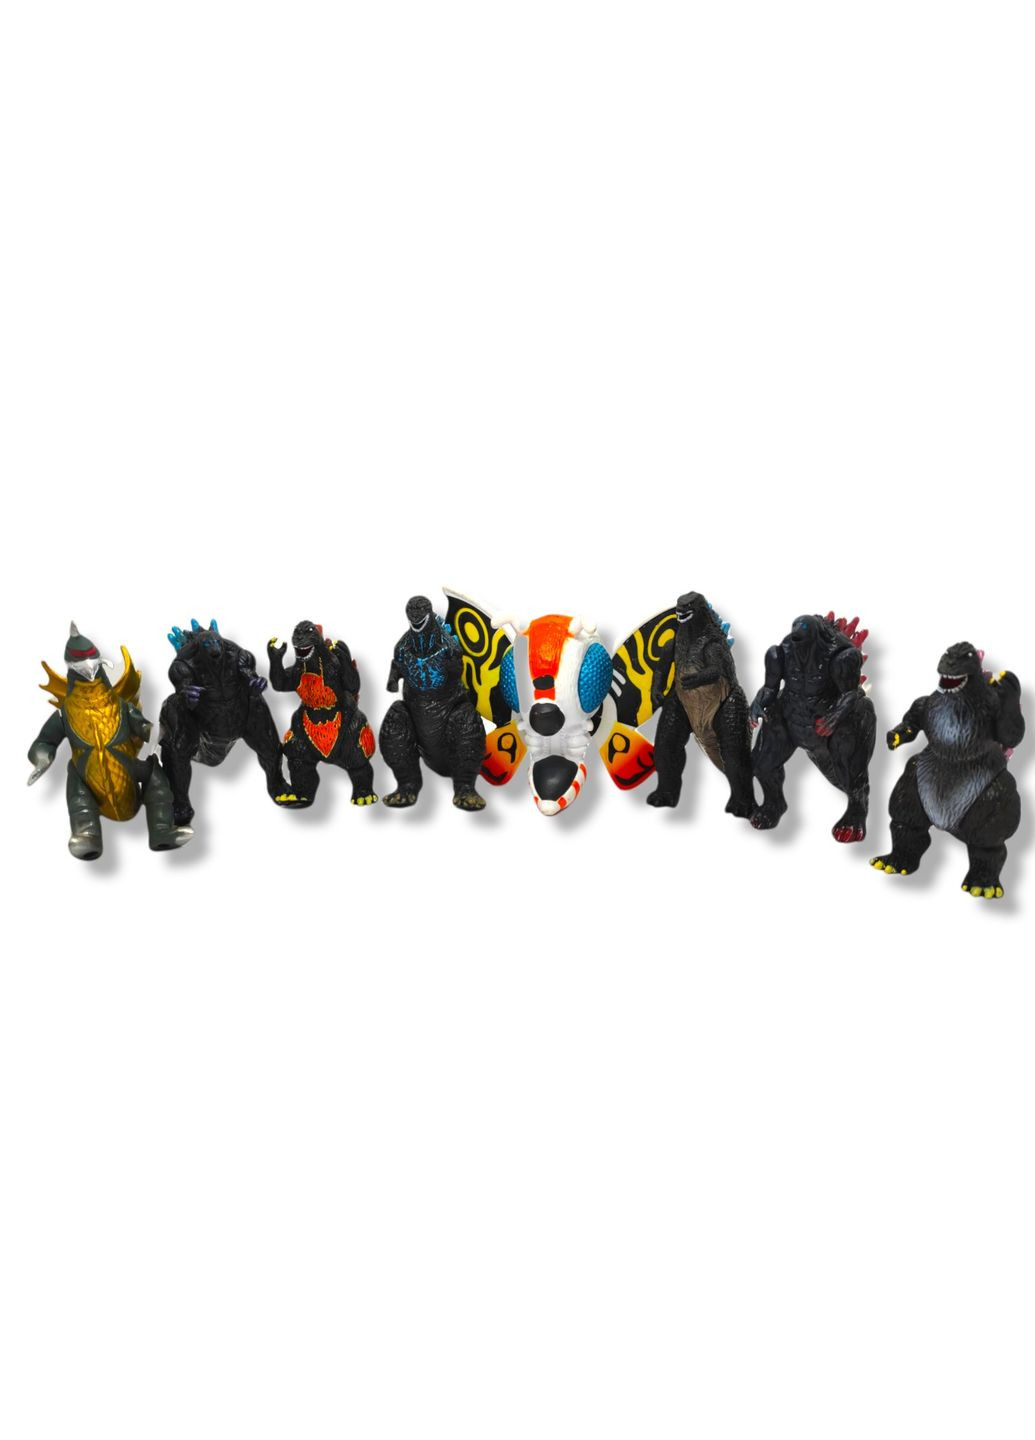 Годзилла Мега Король монстров игрушечный коллекционный набор фигурок Mecha Godzilla Monster King 8шт 10см Shantou (280258444)